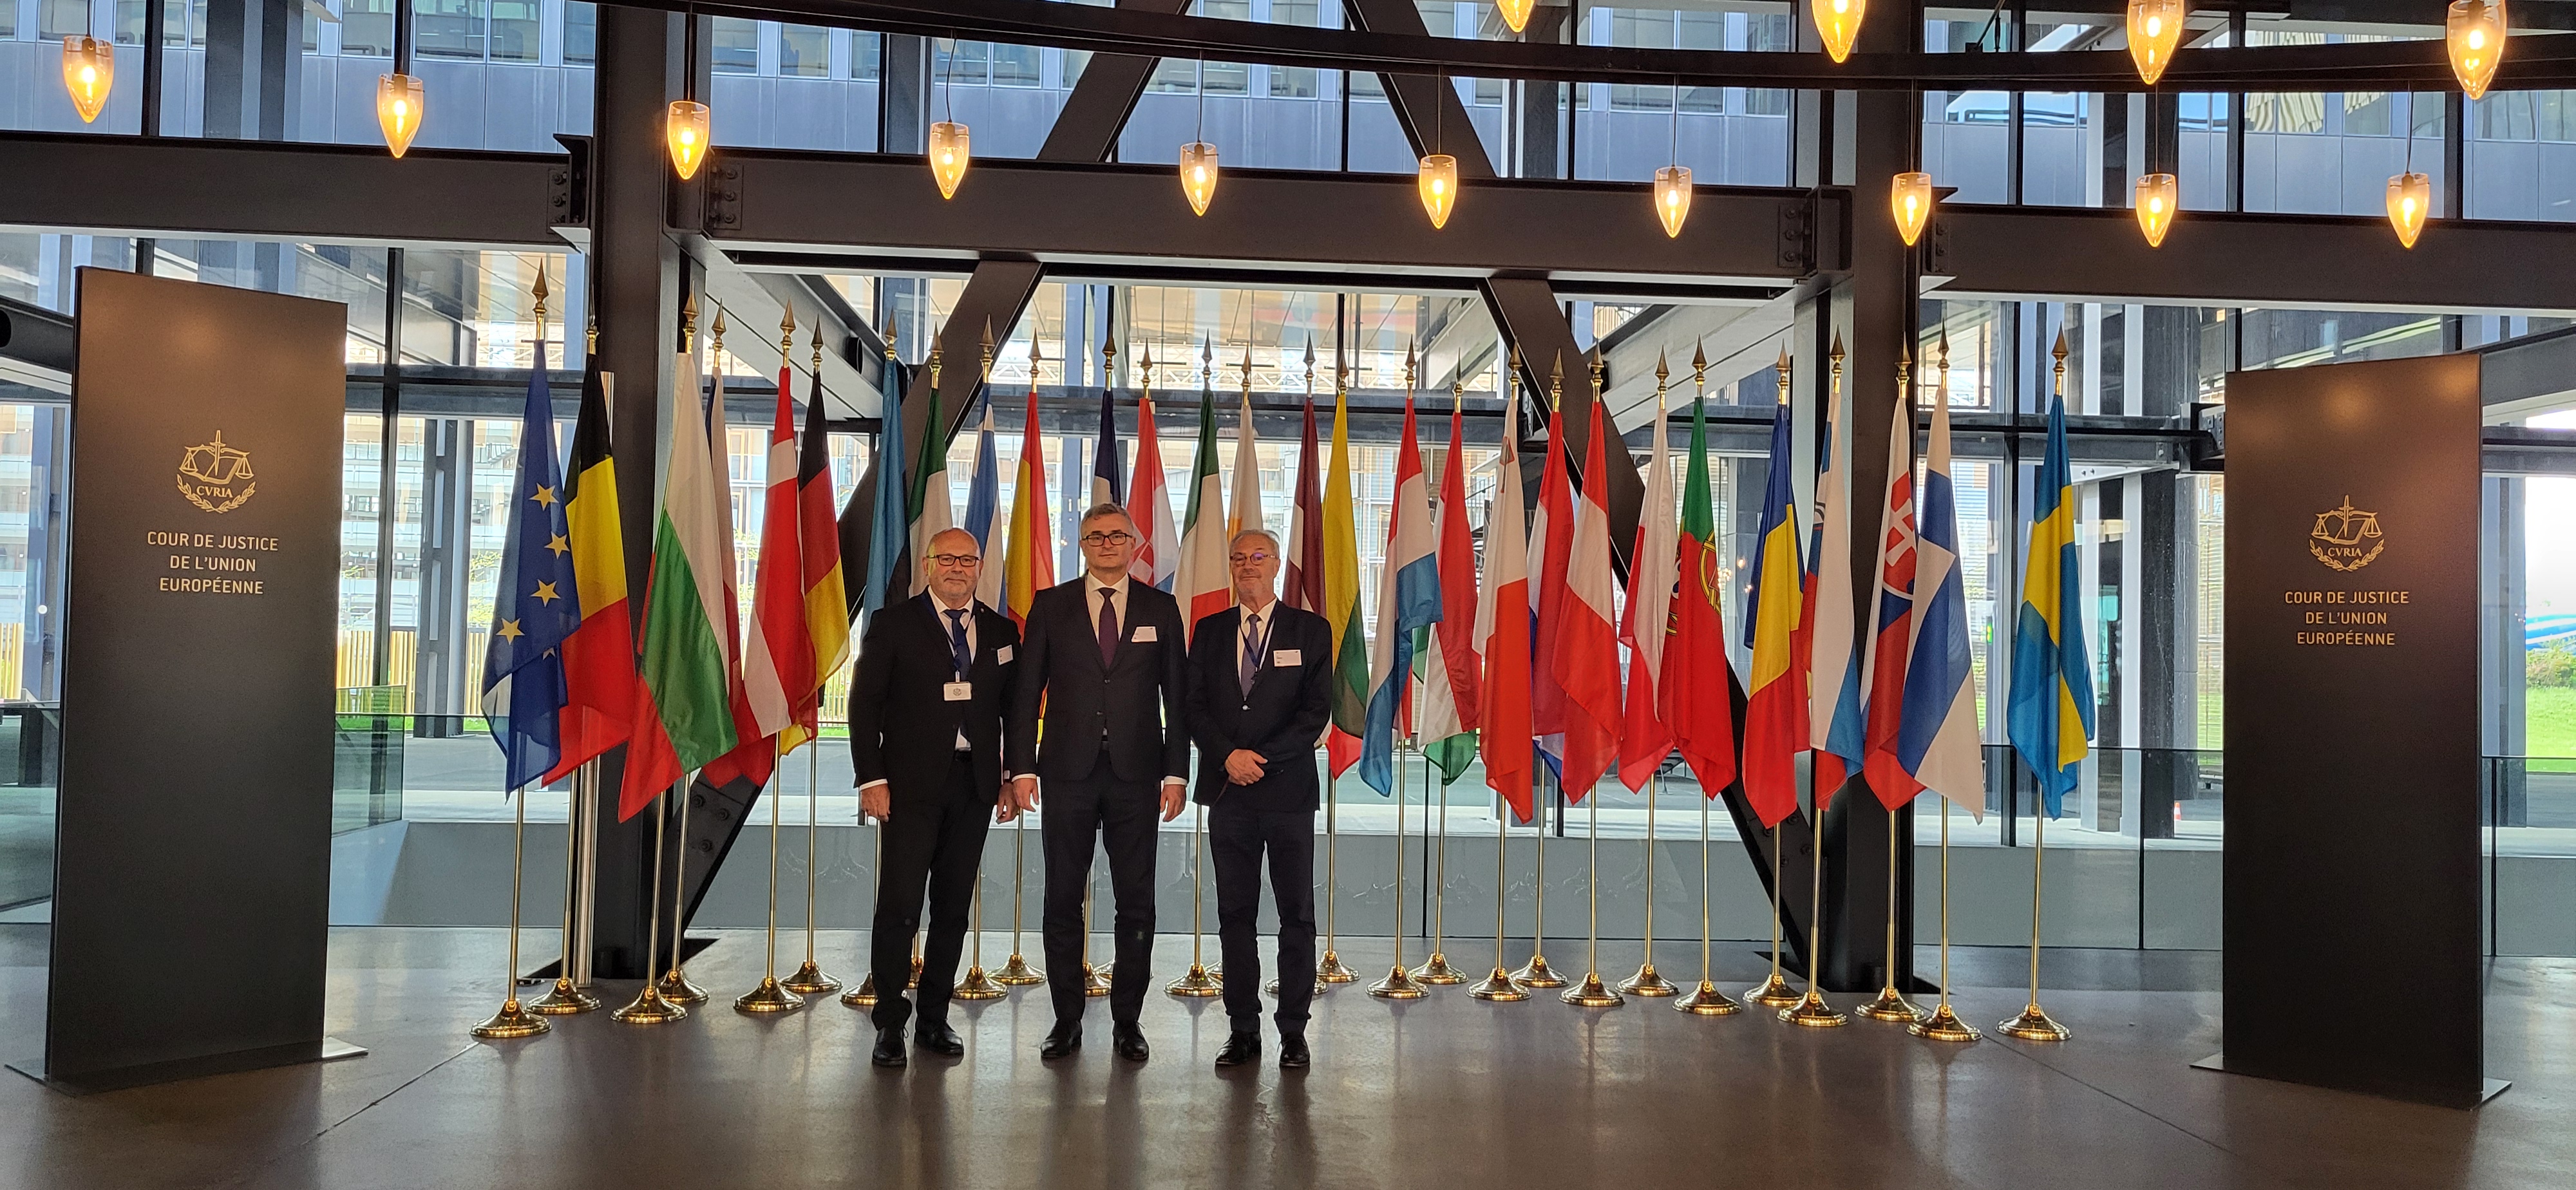 Obrázok Predseda Ústavného súdu Slovenskej republiky sa zúčastňuje na fóre pre predsedov a predsedníčky najvyšších súdnych orgánov členských štátov Európskej únie v Luxemburgu